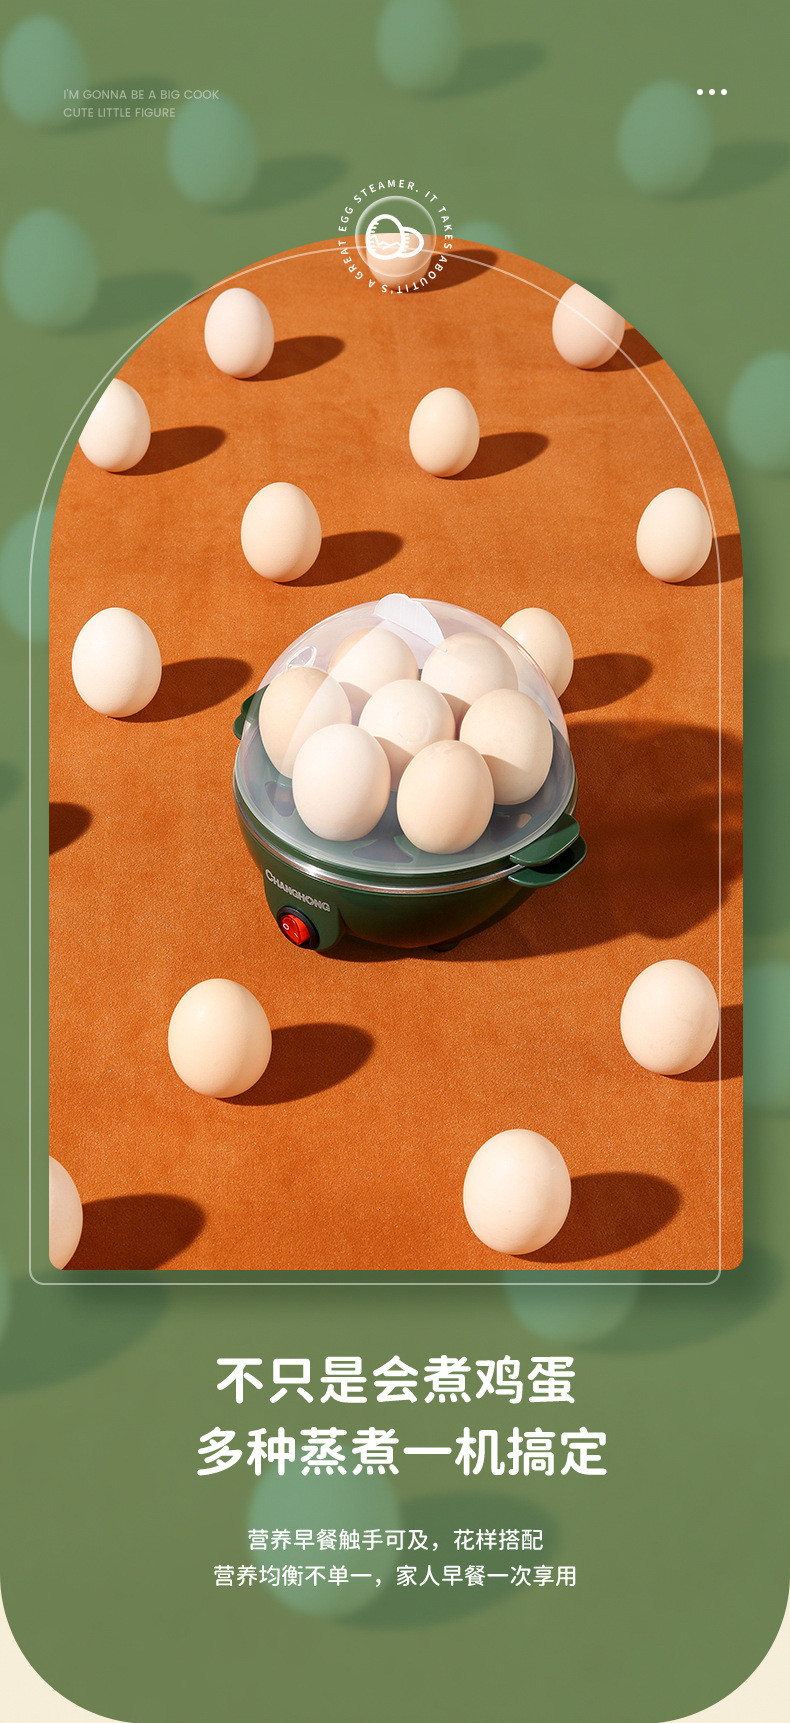 长虹双层家用煮蛋器多功能小型早餐神器蒸蛋器蒸红薯鸡蛋羹饭